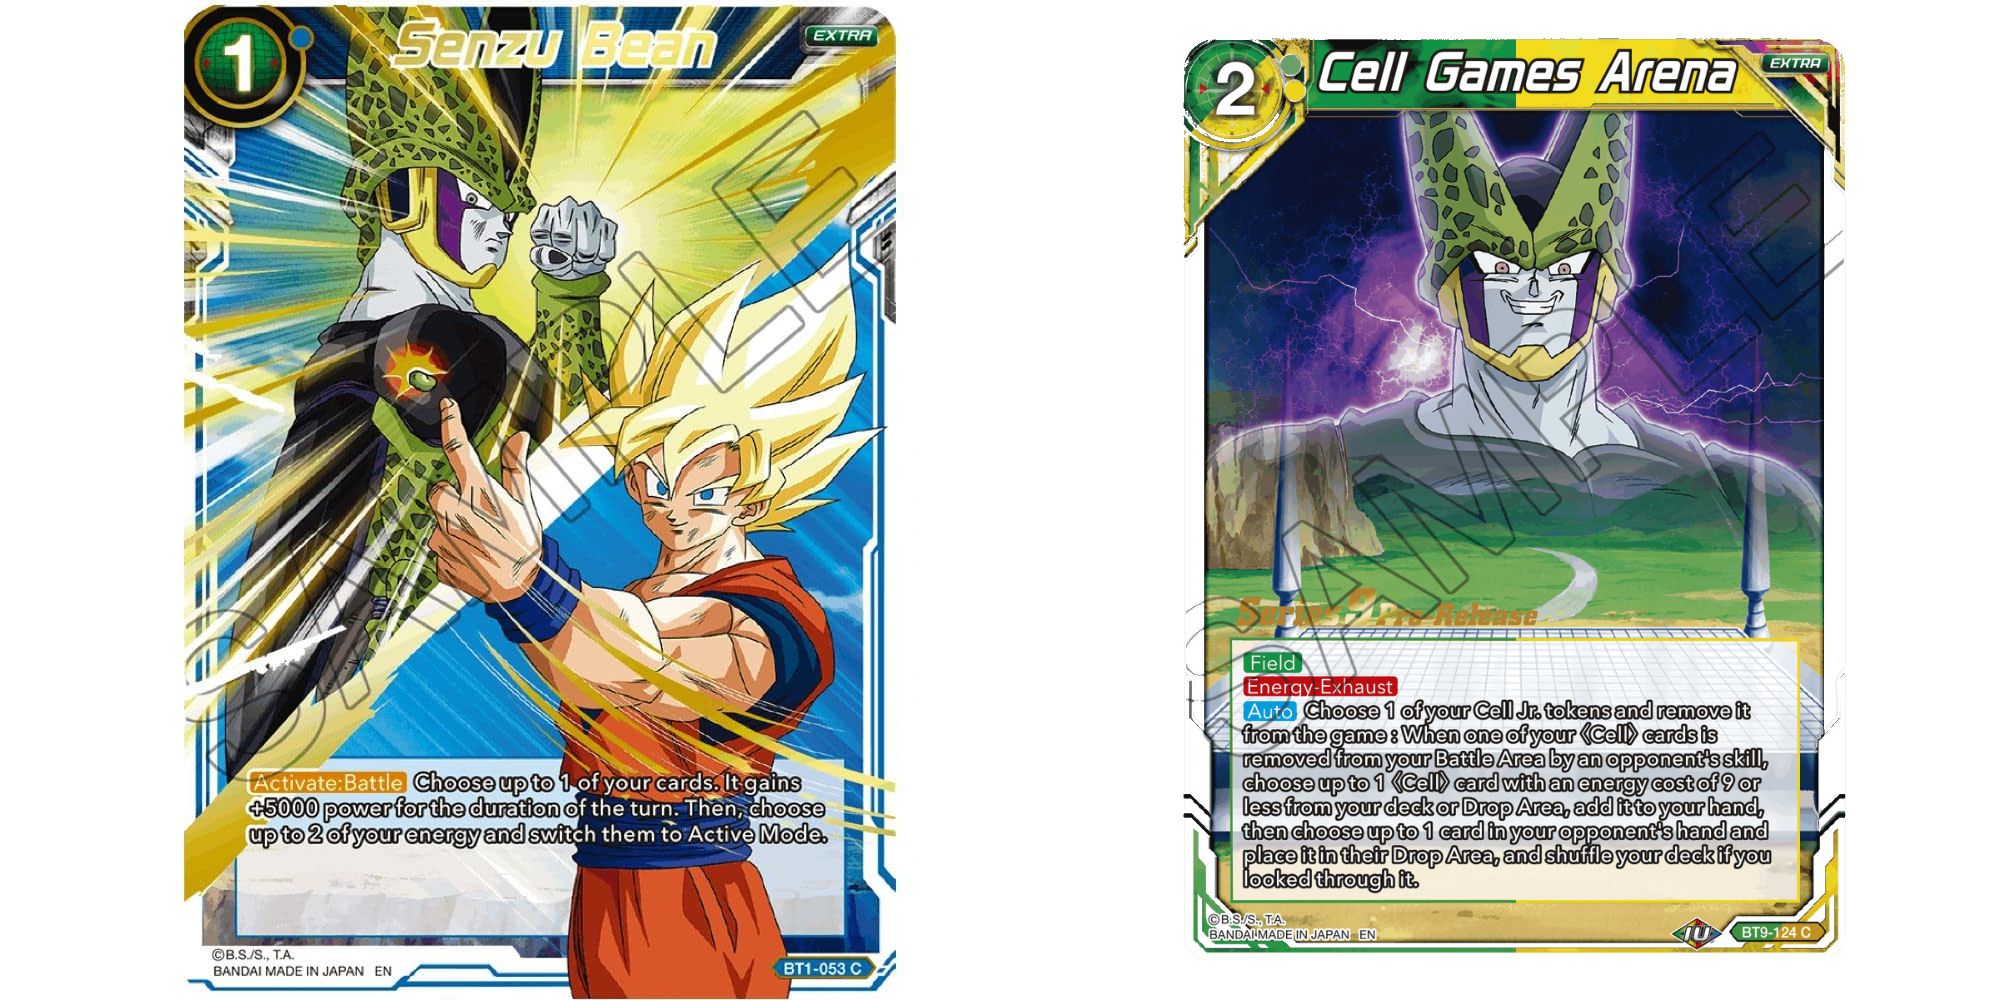 Senzu Bean e Cell Games Arena Cartas extras no Dragon Ball Super Card Game.